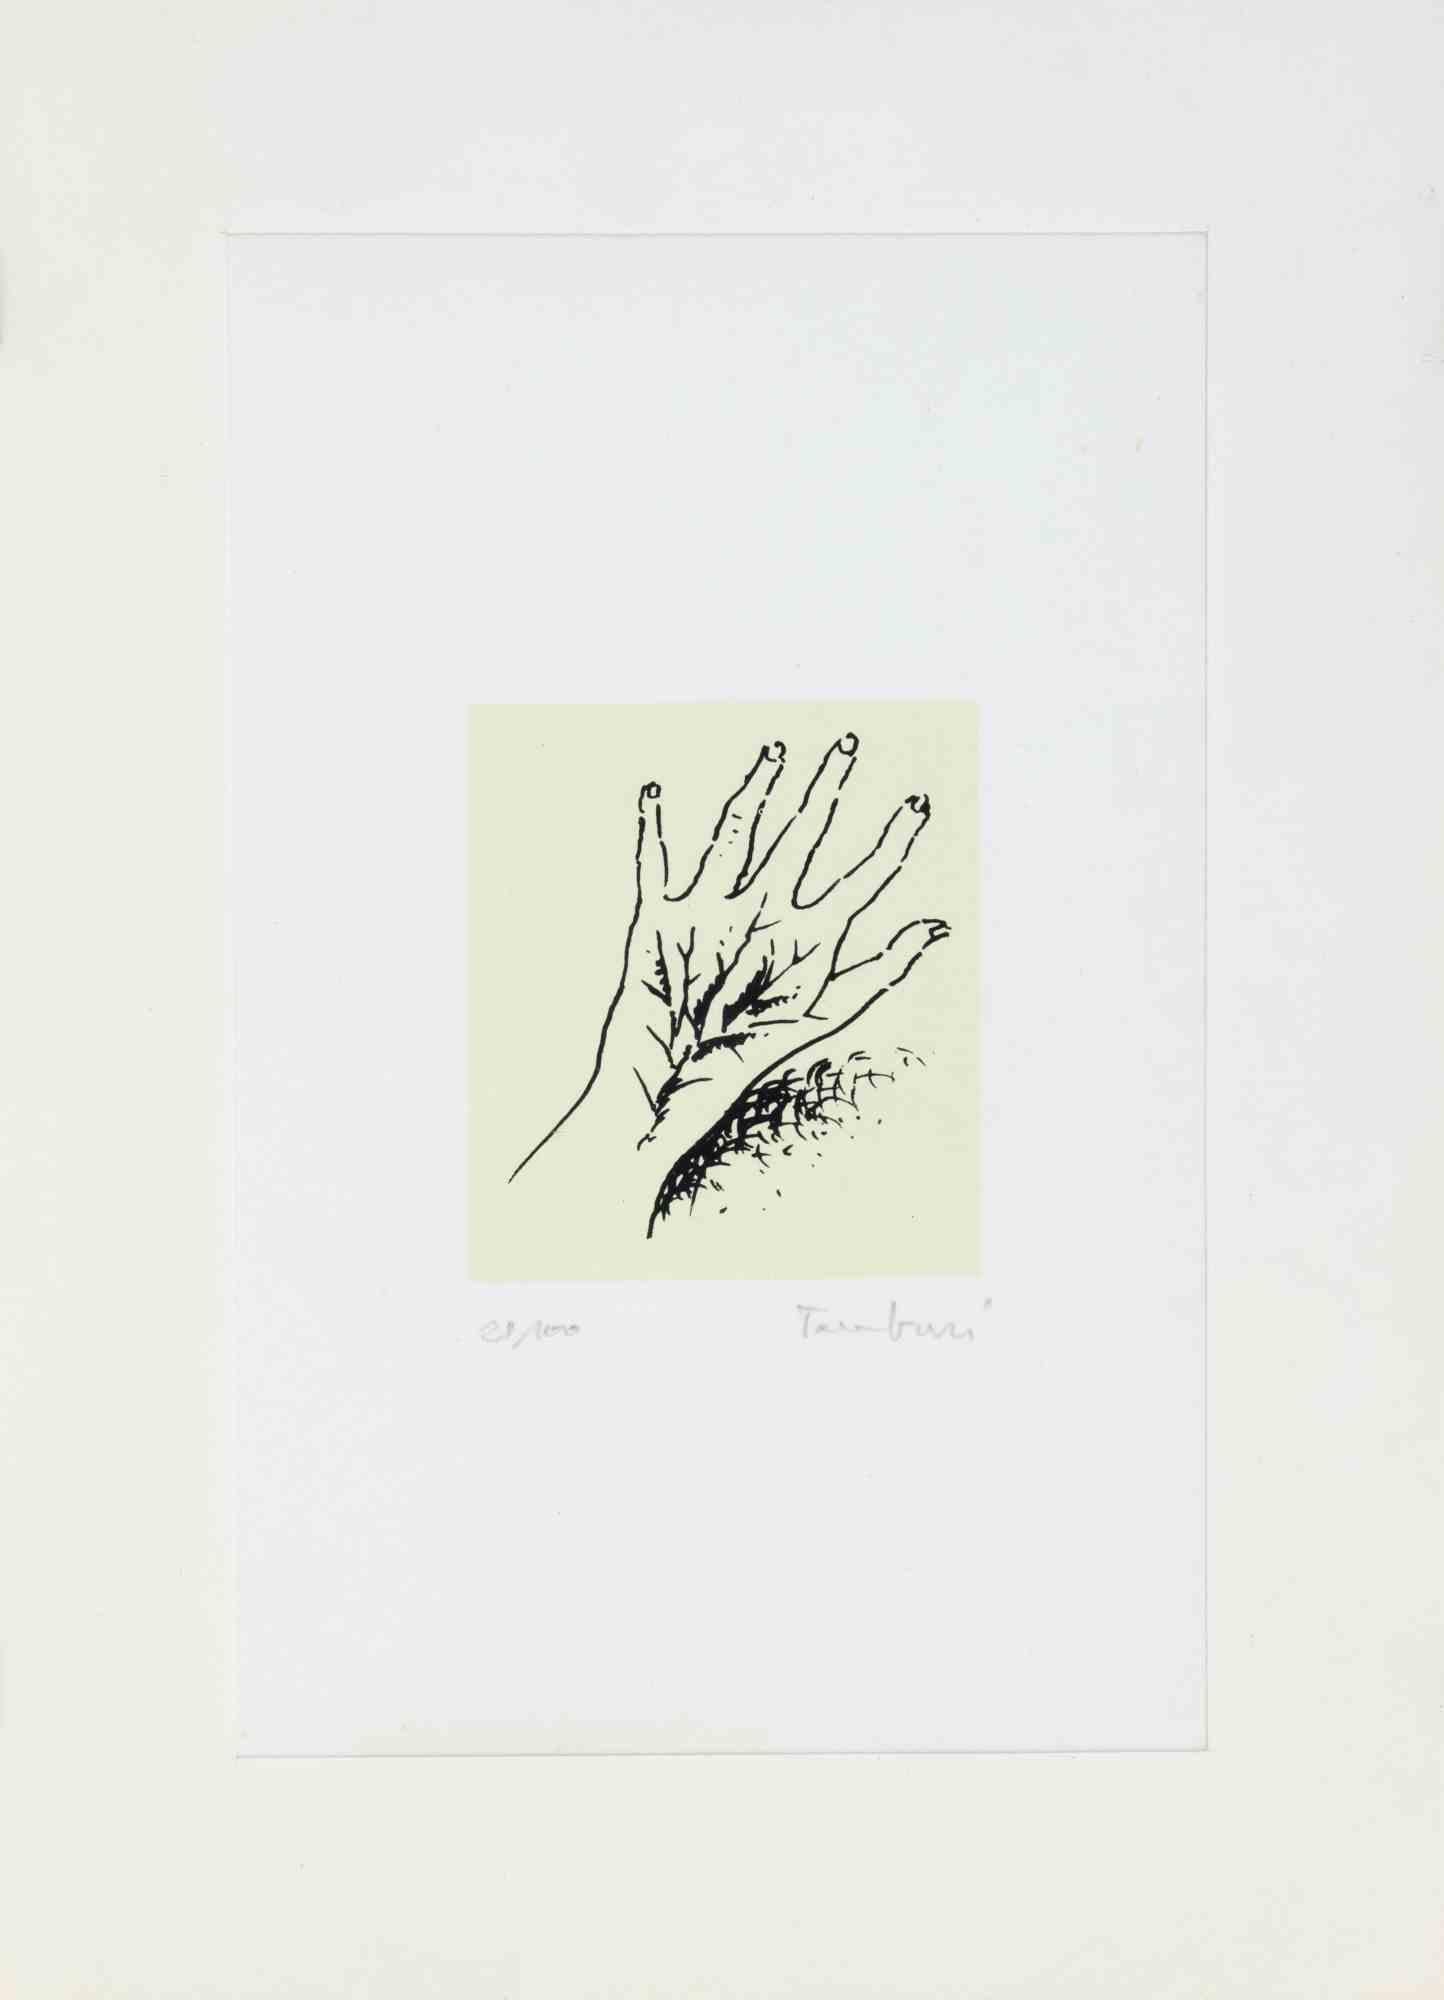 La main est une œuvre d'art moderne réalisée par Orfeo Tamburi au milieu du 20e siècle.

Lithographie en couleurs mixtes.

Signé à la main et numéroté dans la marge inférieure.

Édition de 21/100.